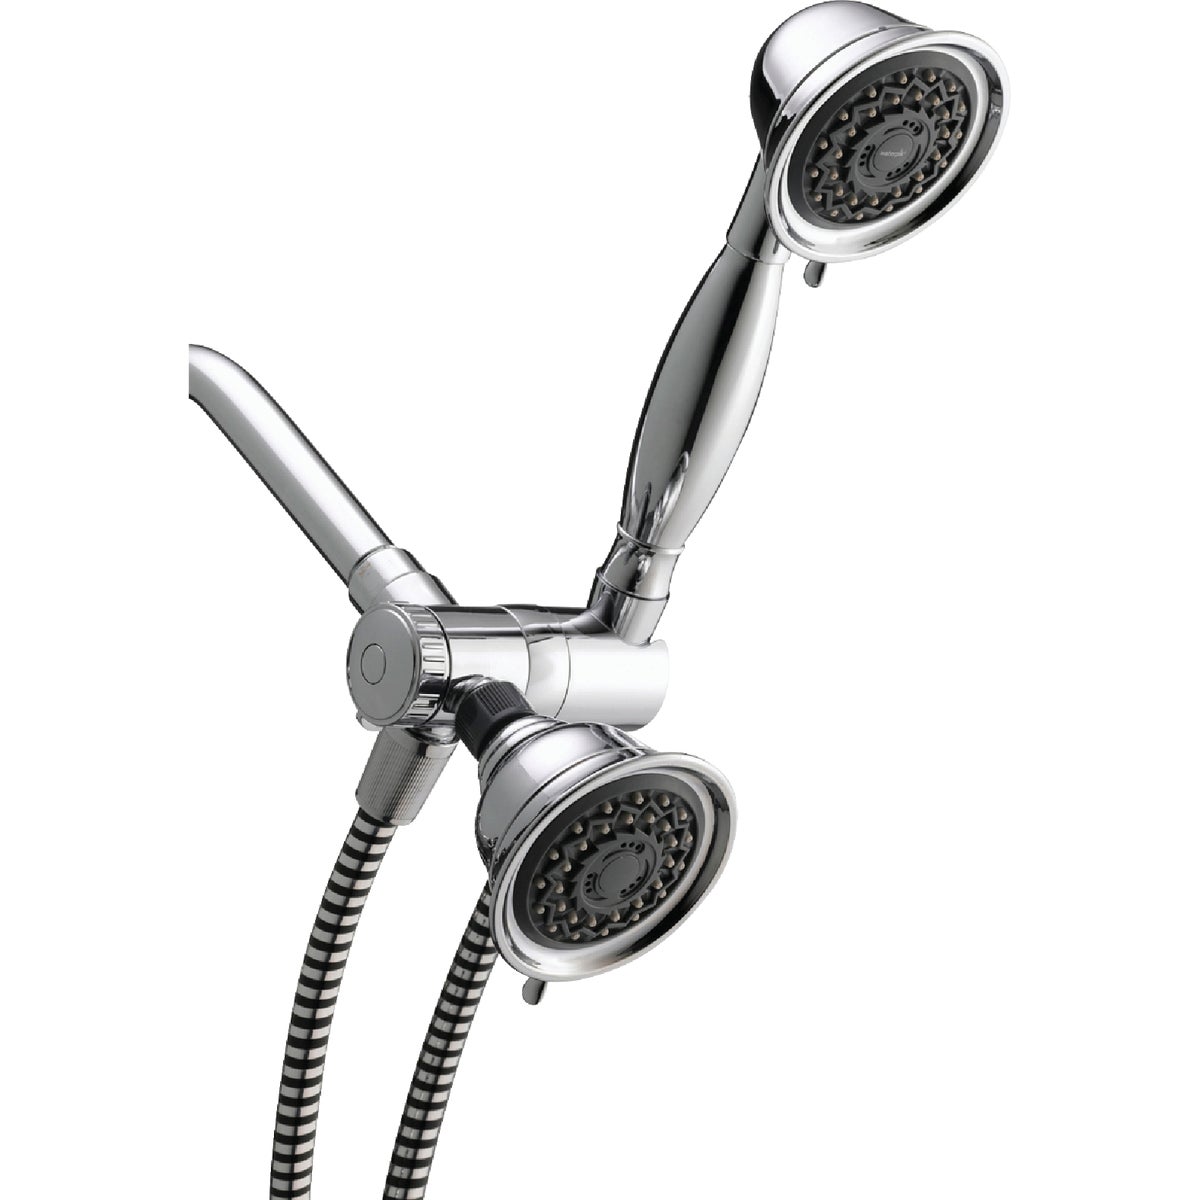 Waterpik PowerSpray+ Dual Shower Head 3-Spray  1.8 GPM Combo Handheld Shower & Showerhead, Chrome